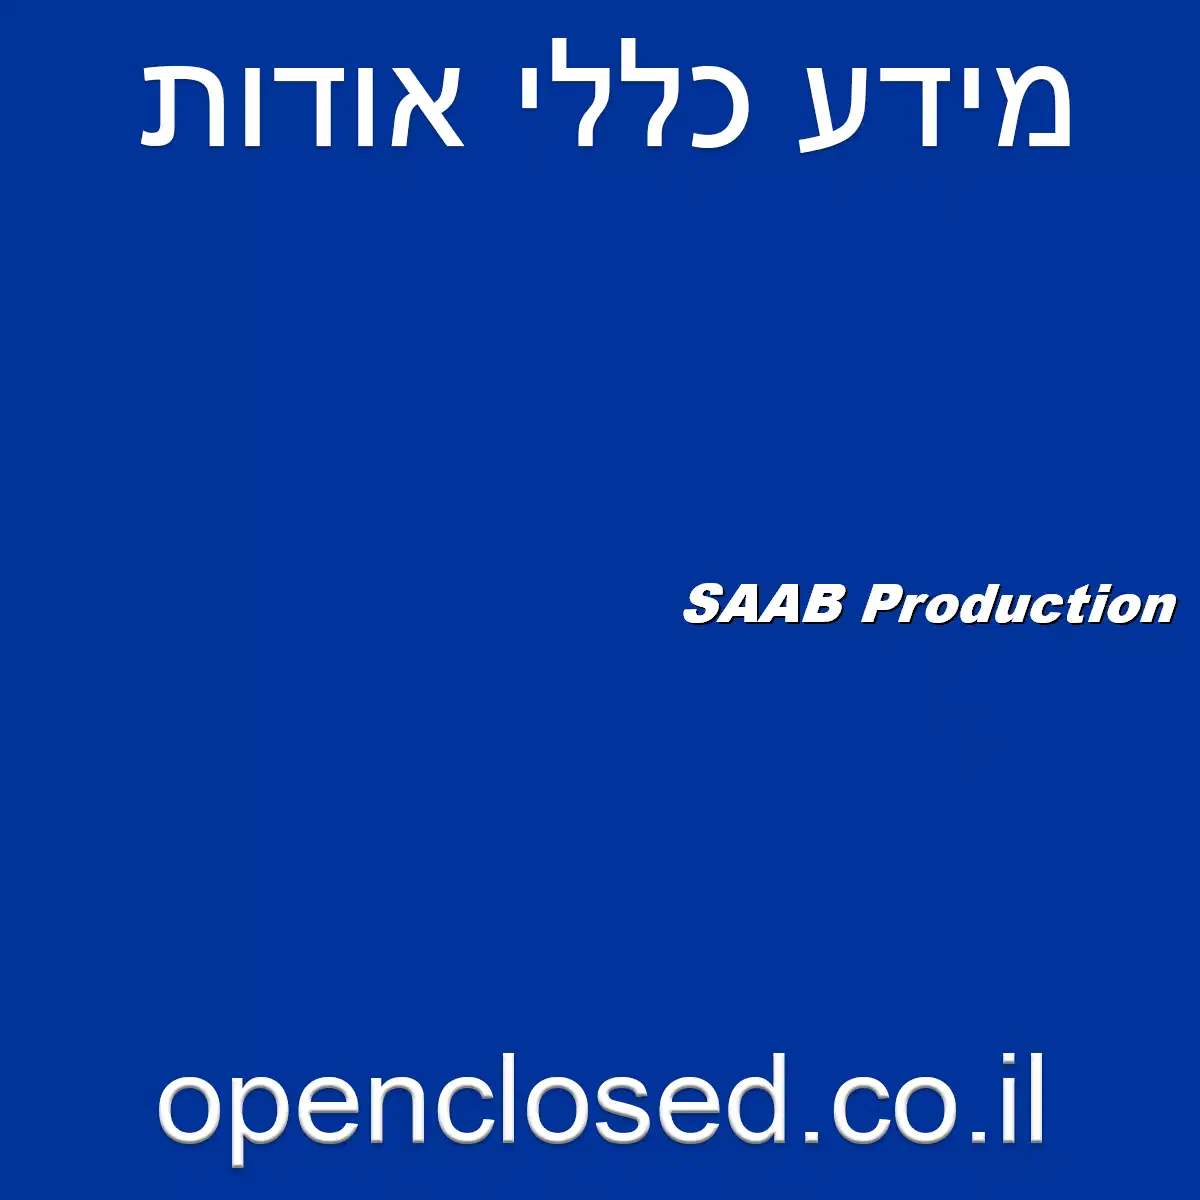 SAAB Production